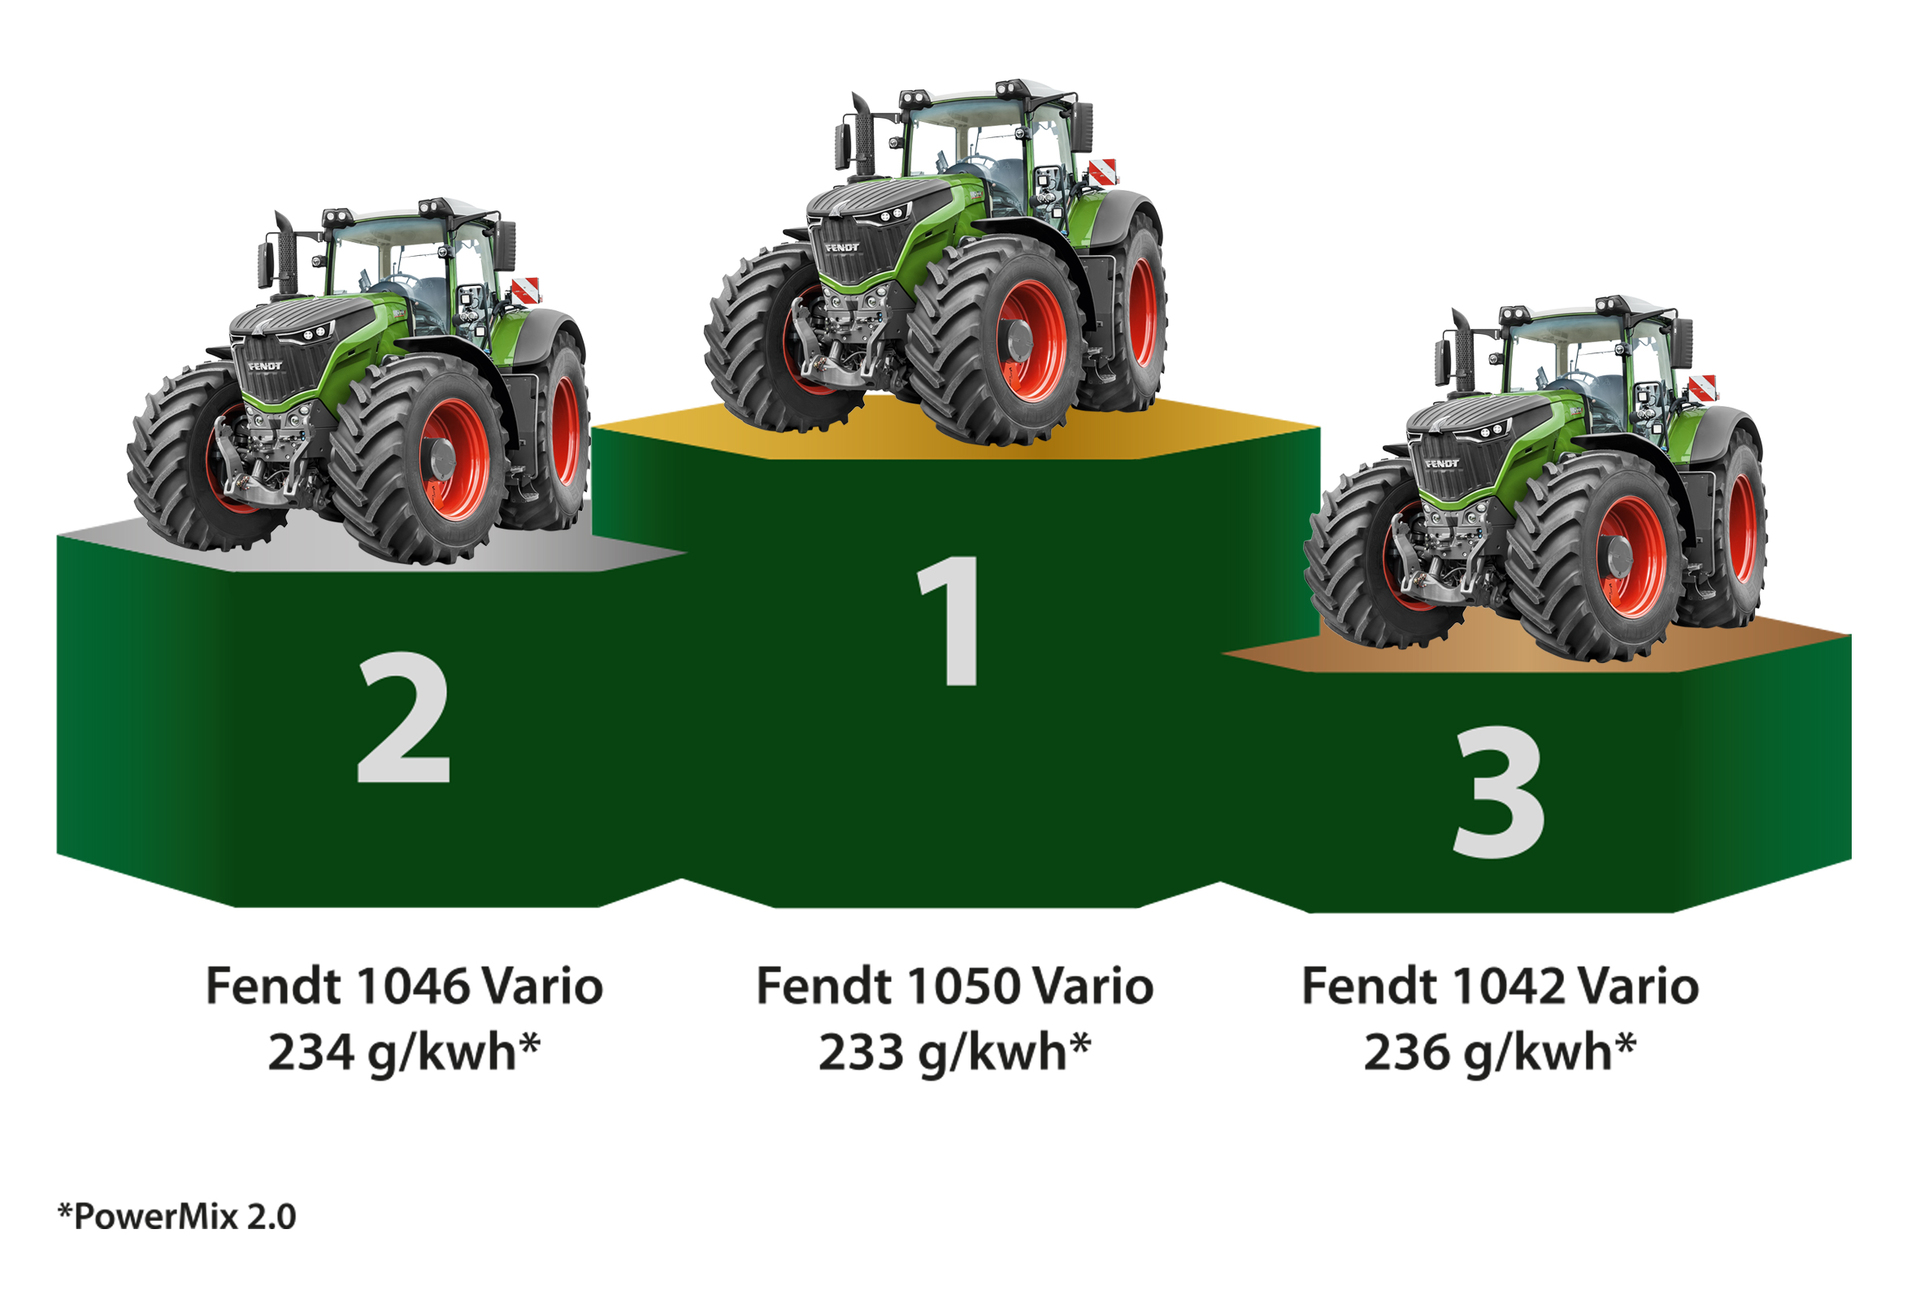 Fendt 1050 Vario PowerPlus 4WD Tractor Specs (2015 - 2020)